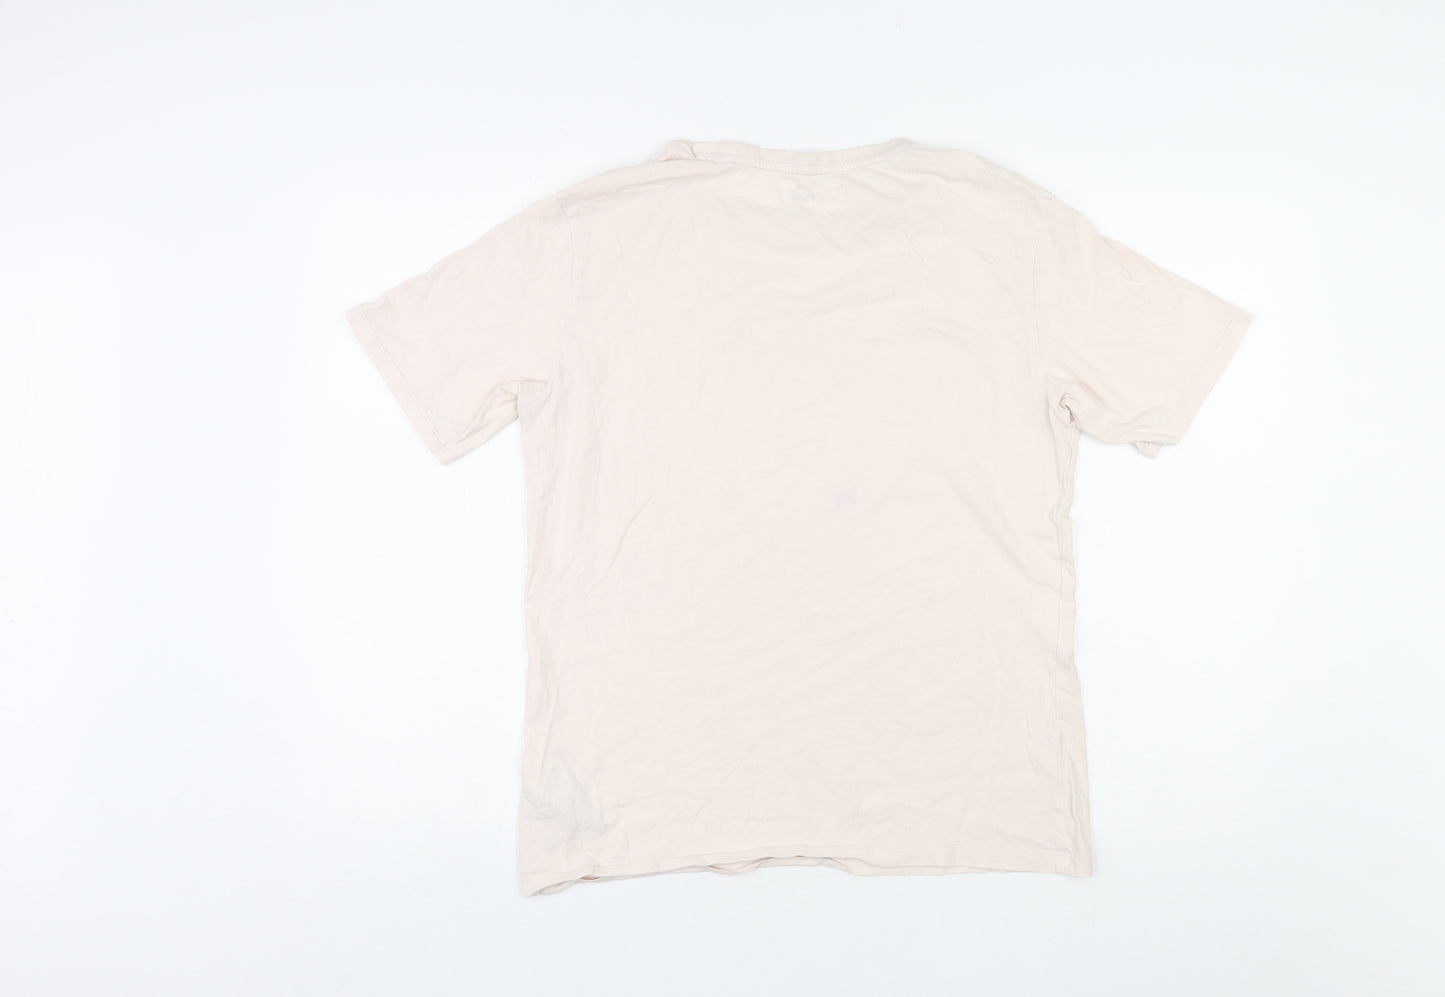 PUMA Womens Pink Cotton Basic T-Shirt Size 10 Round Neck